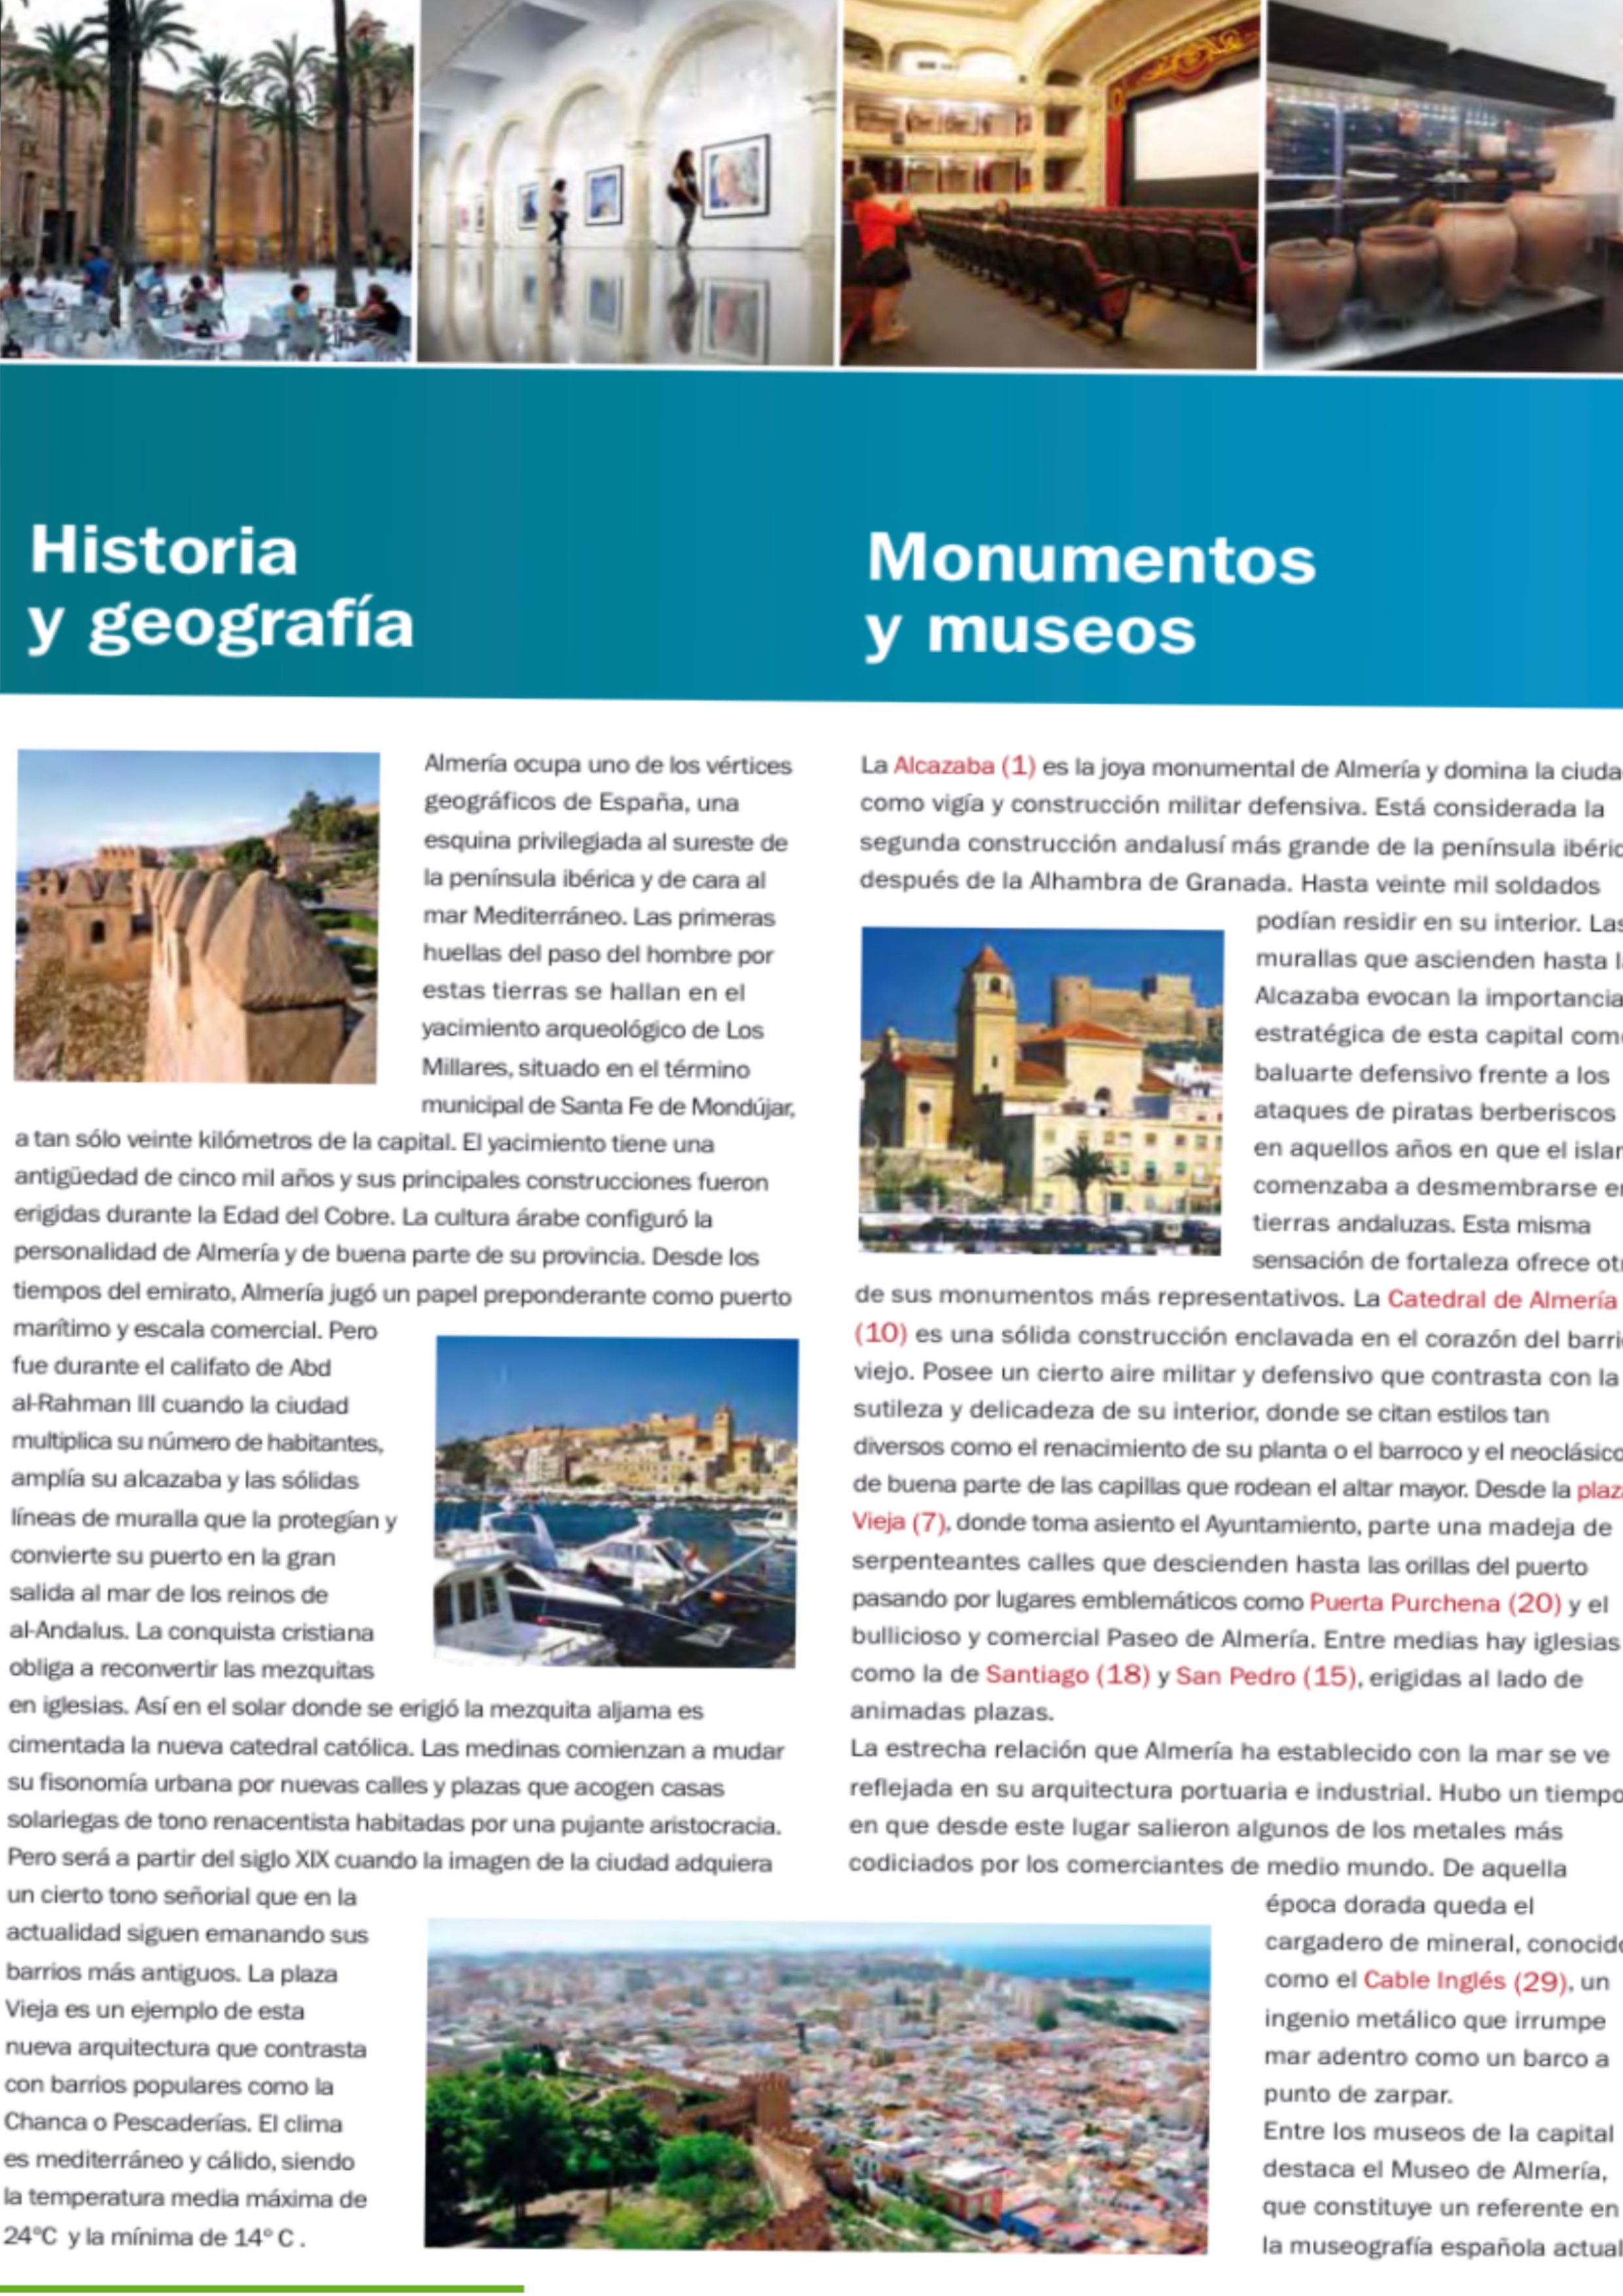 Aparecen imágenes de la guía de una ciudad andaluza, información escrita y un mapa con símbolos sobre las partes de la ciudad.